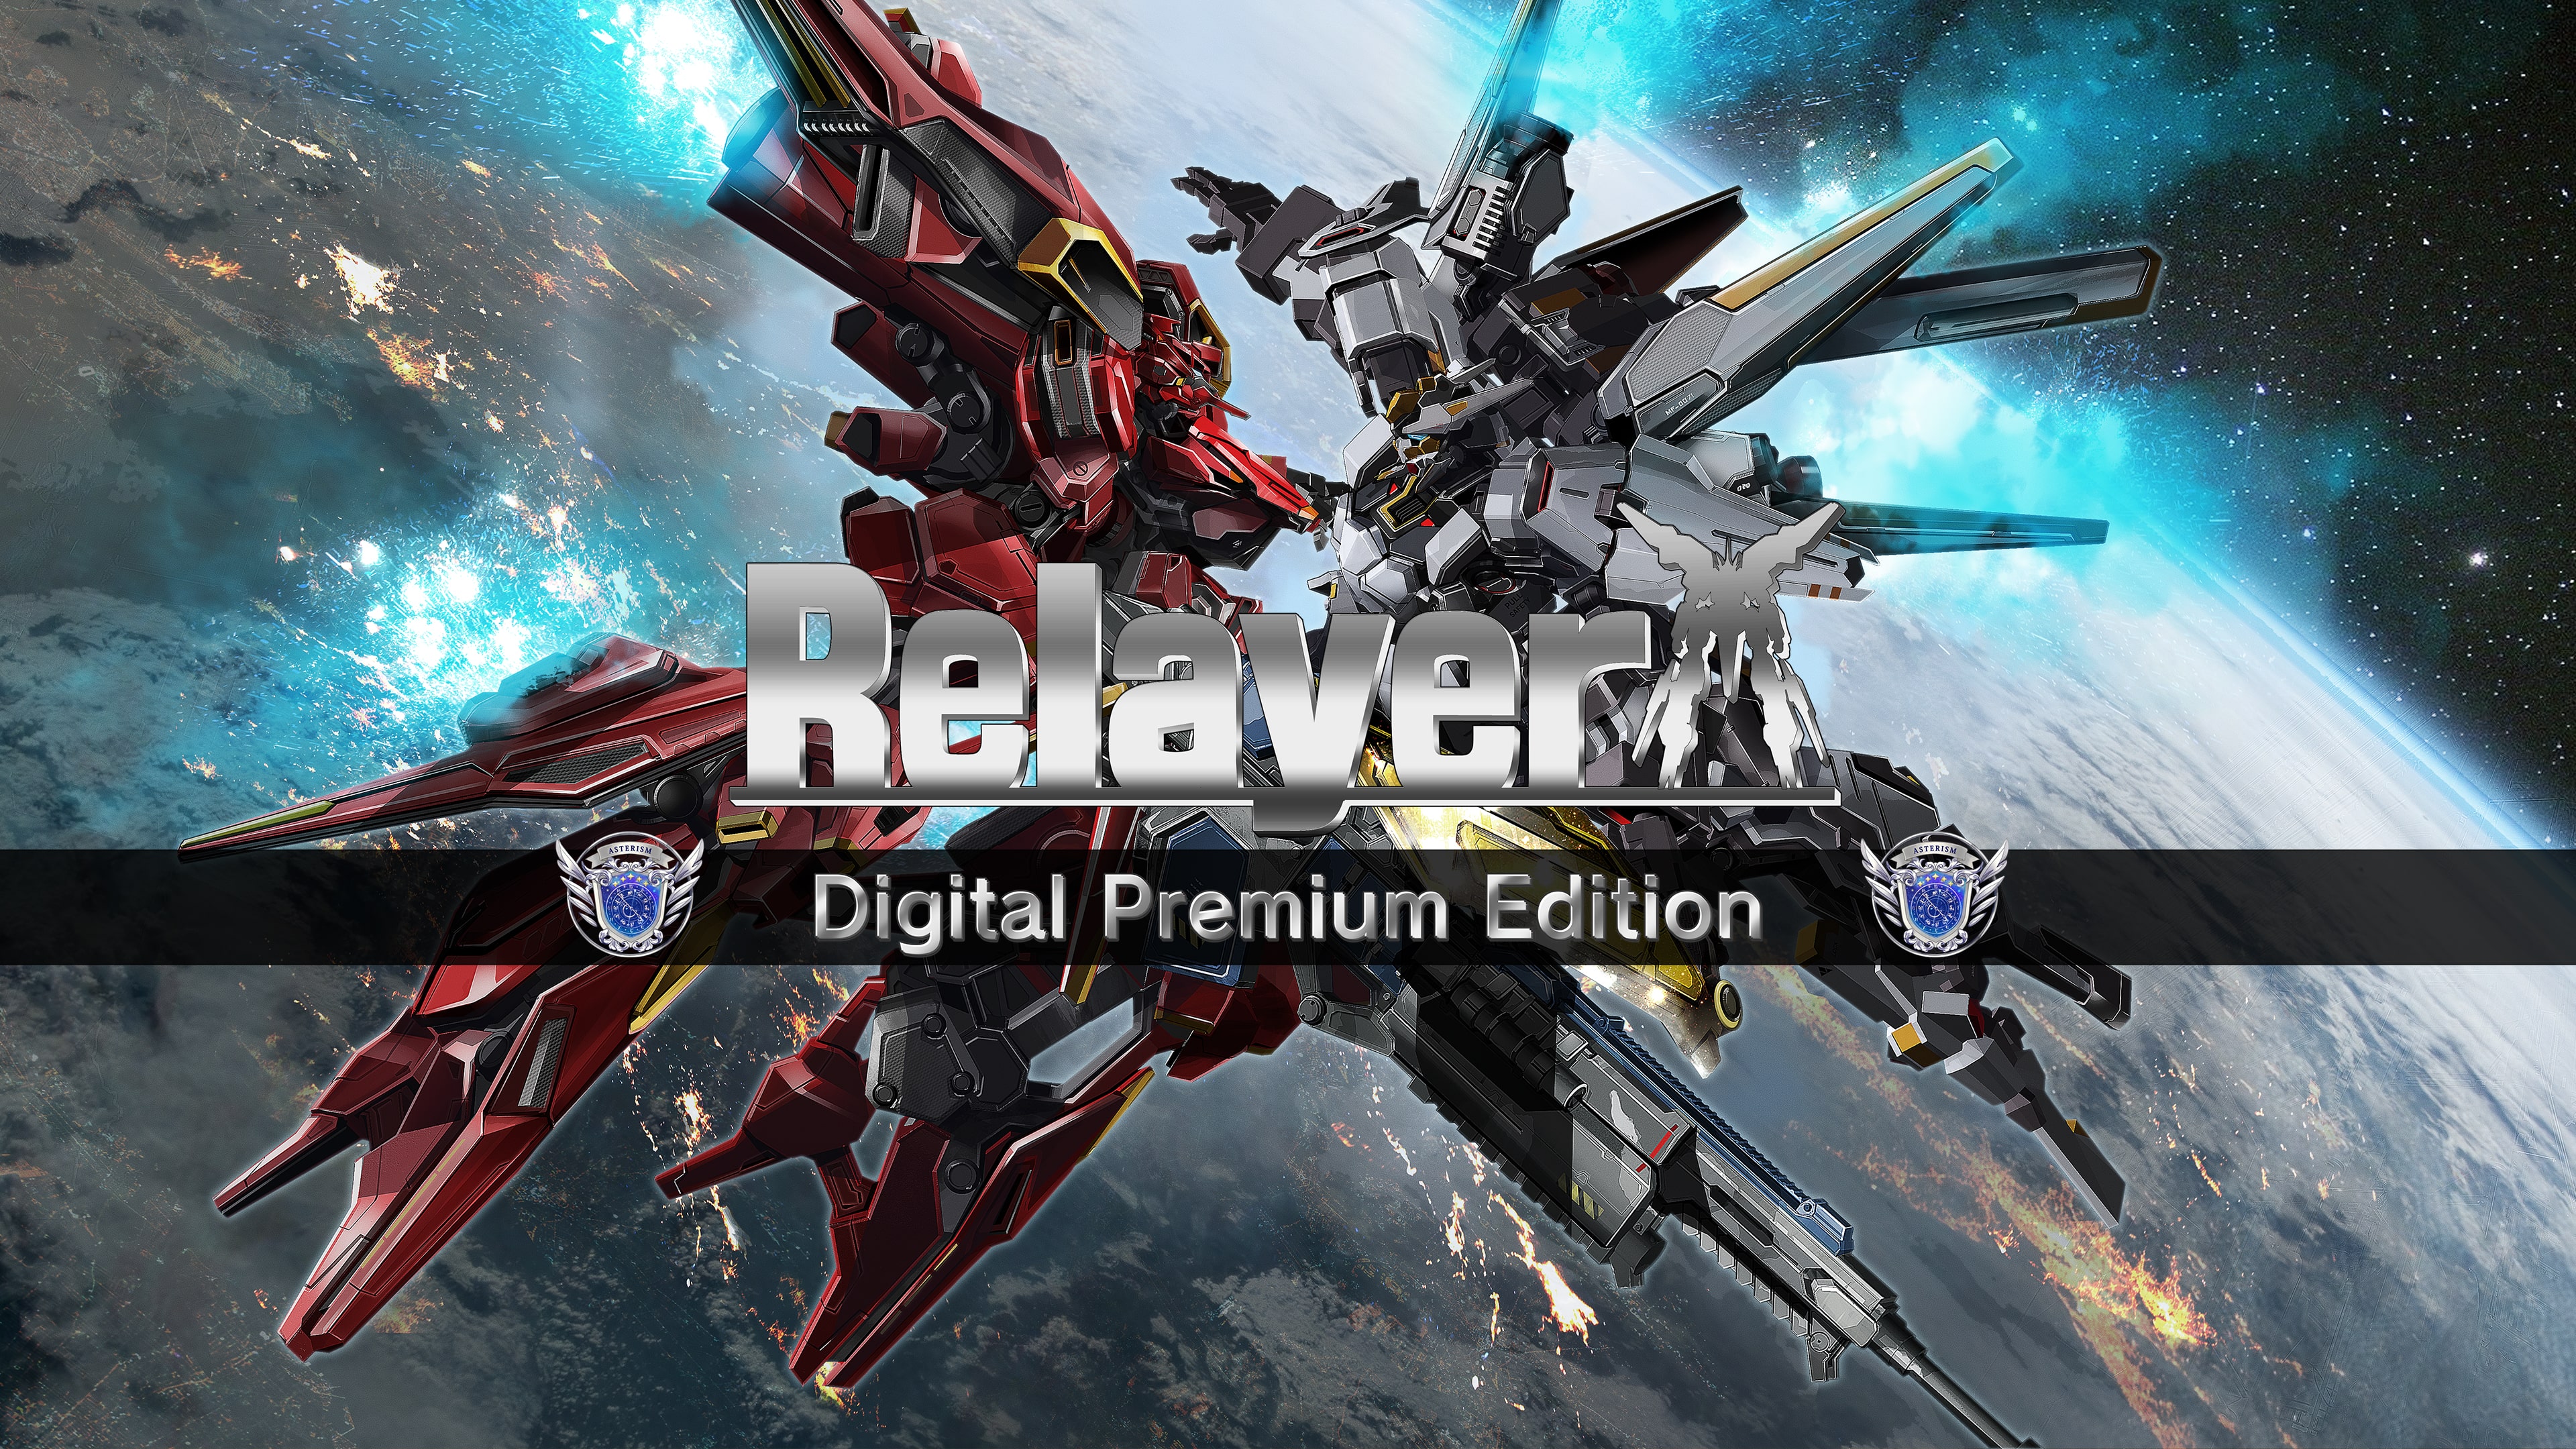 Digital Premium Edition